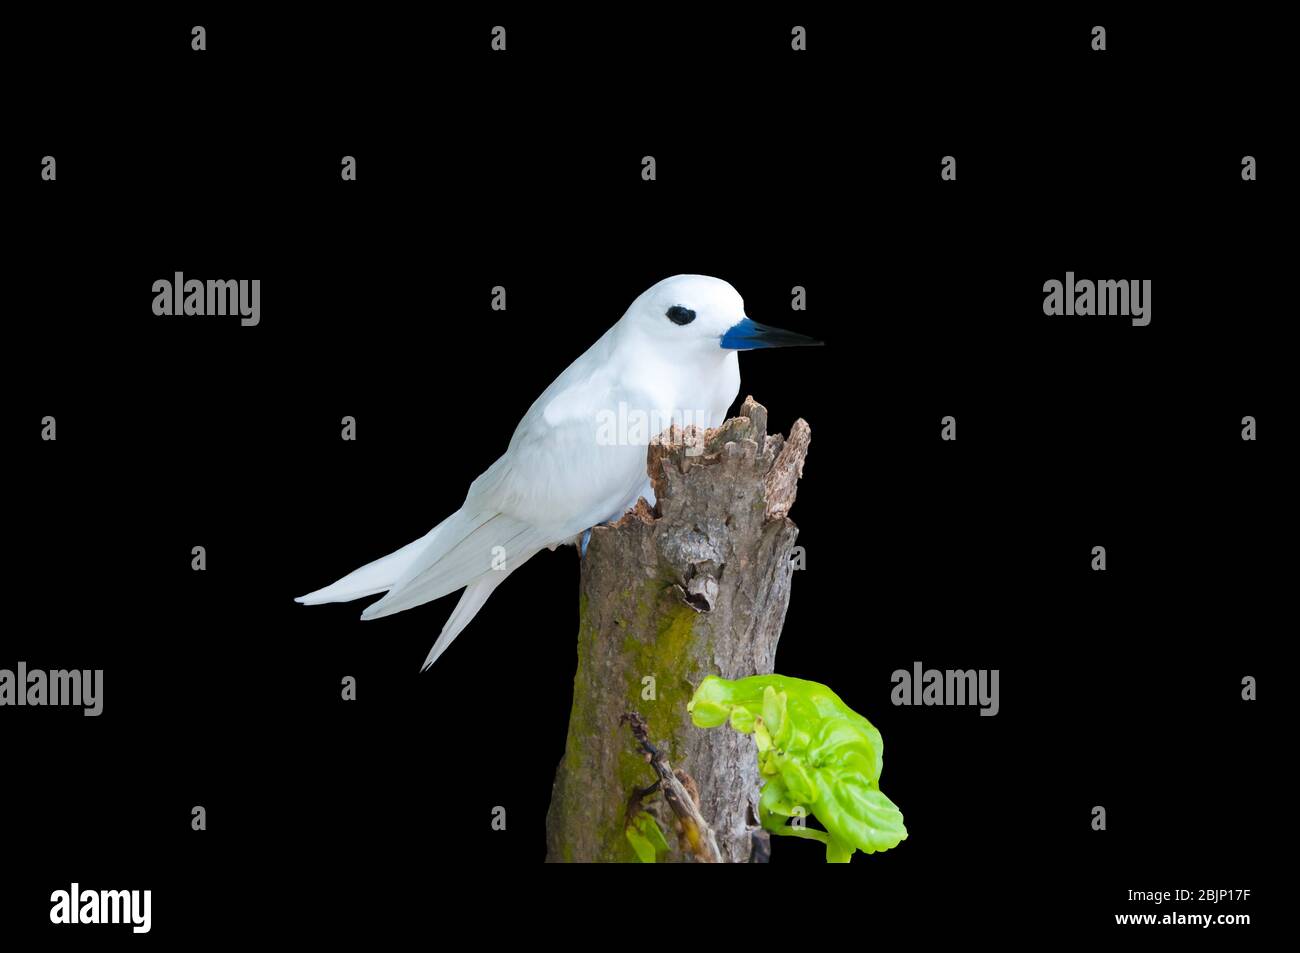 Poppa bianca, Gygis alba, un piccolo sabirdo che si trova attraverso gli oceani tropicali del mondo, conosciuto come la fata terna, angelo terna e bianco noddy in inglese Foto Stock